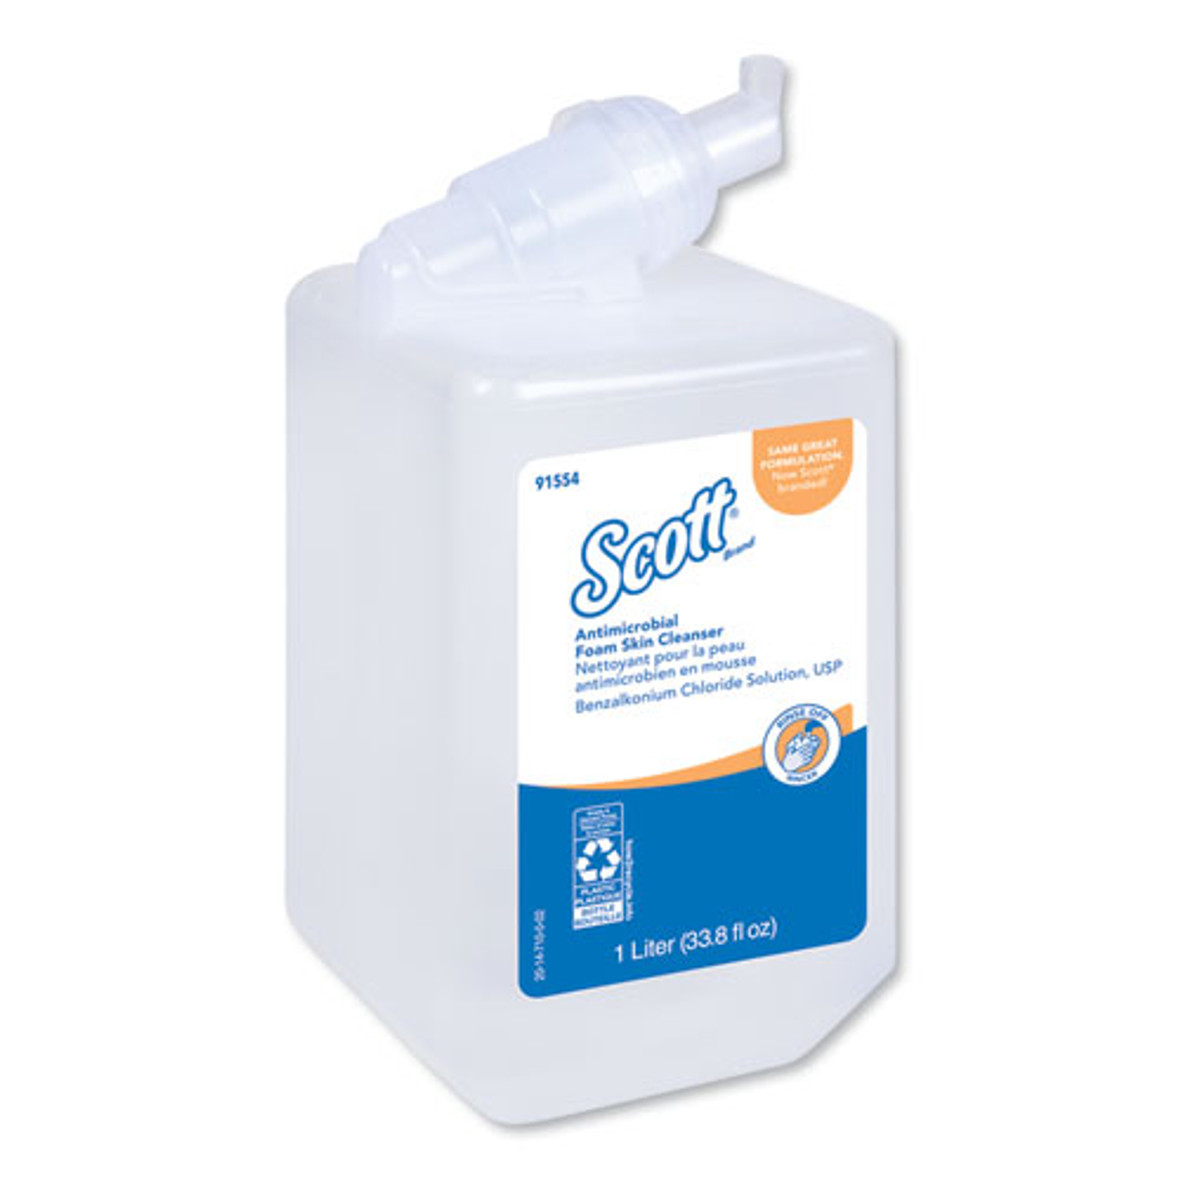 Scott® Control Antimicrobial Foam Skin Cleanser, Fresh Scent